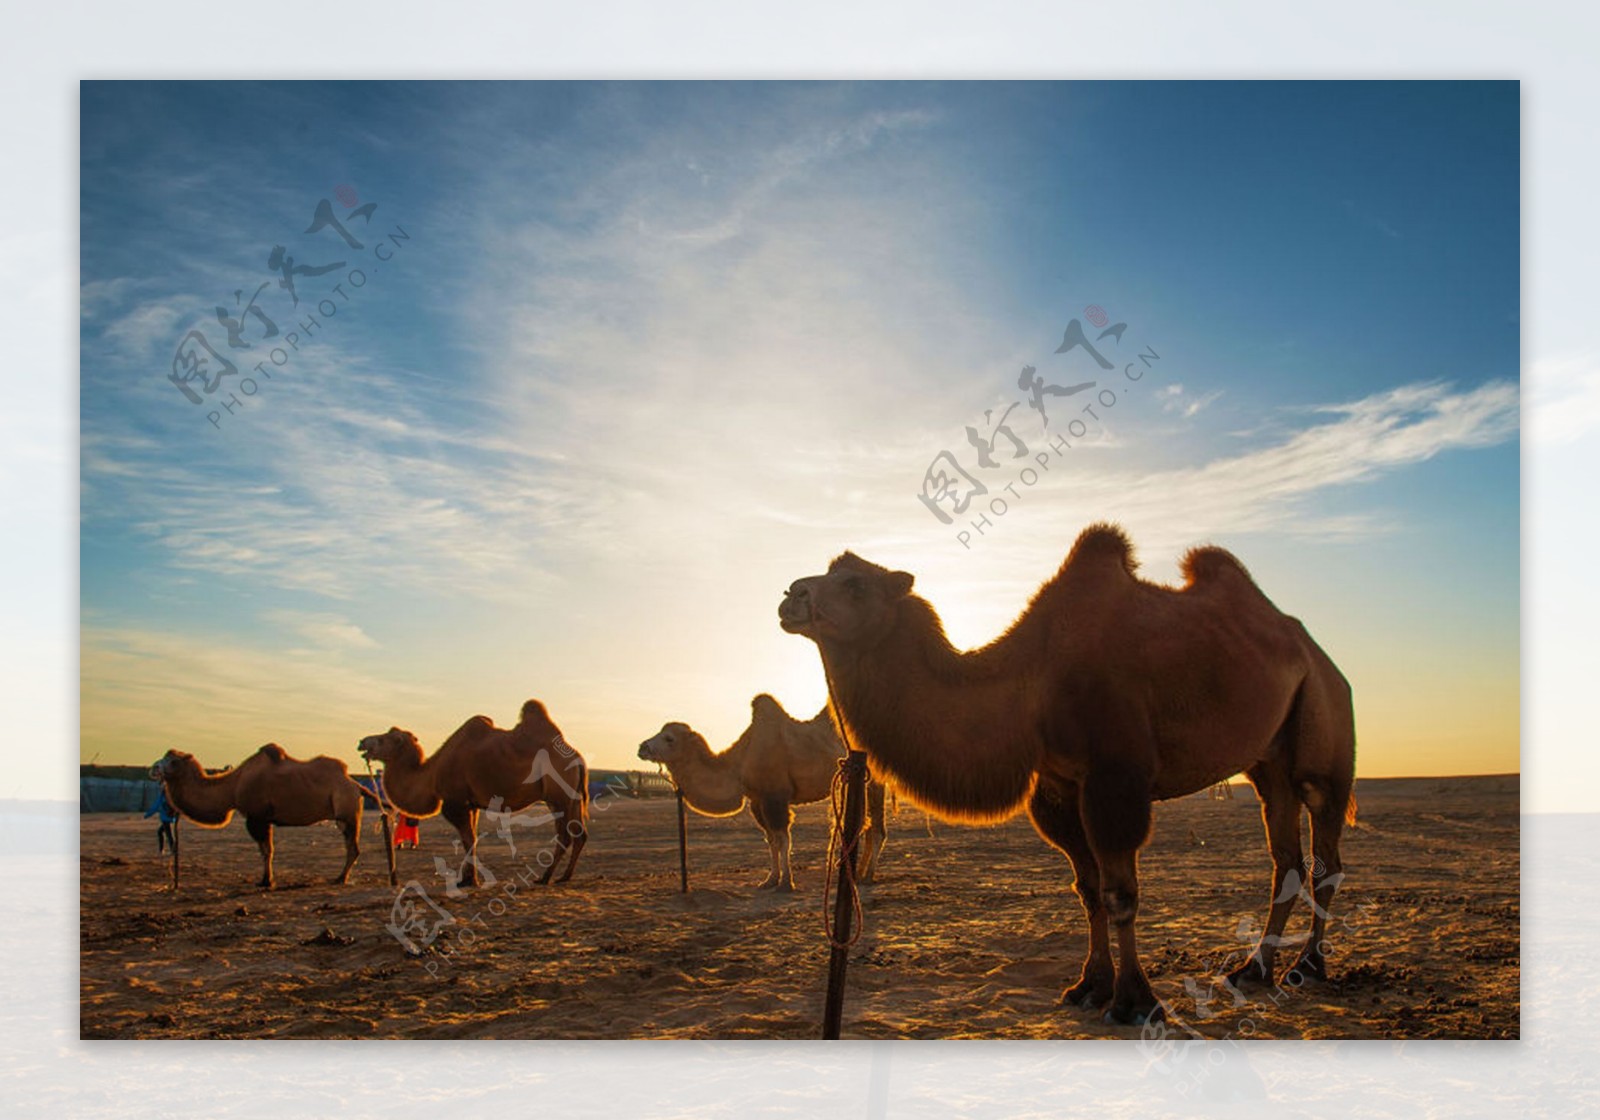 沙漠之舟骆驼